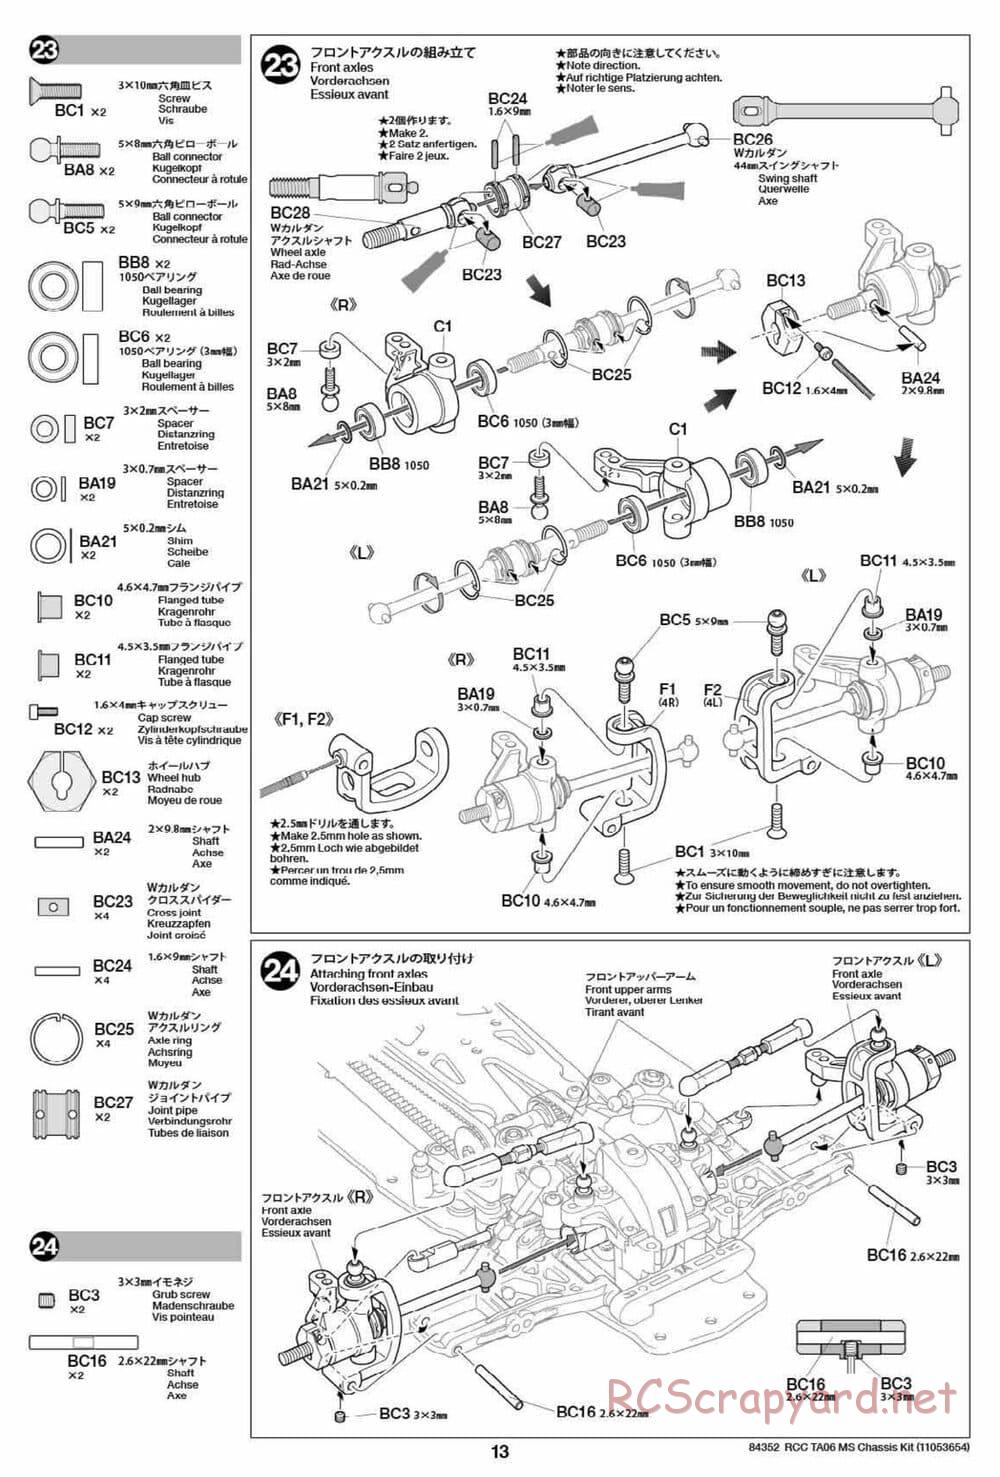 Tamiya - TA06 MS Chassis - Manual - Page 13